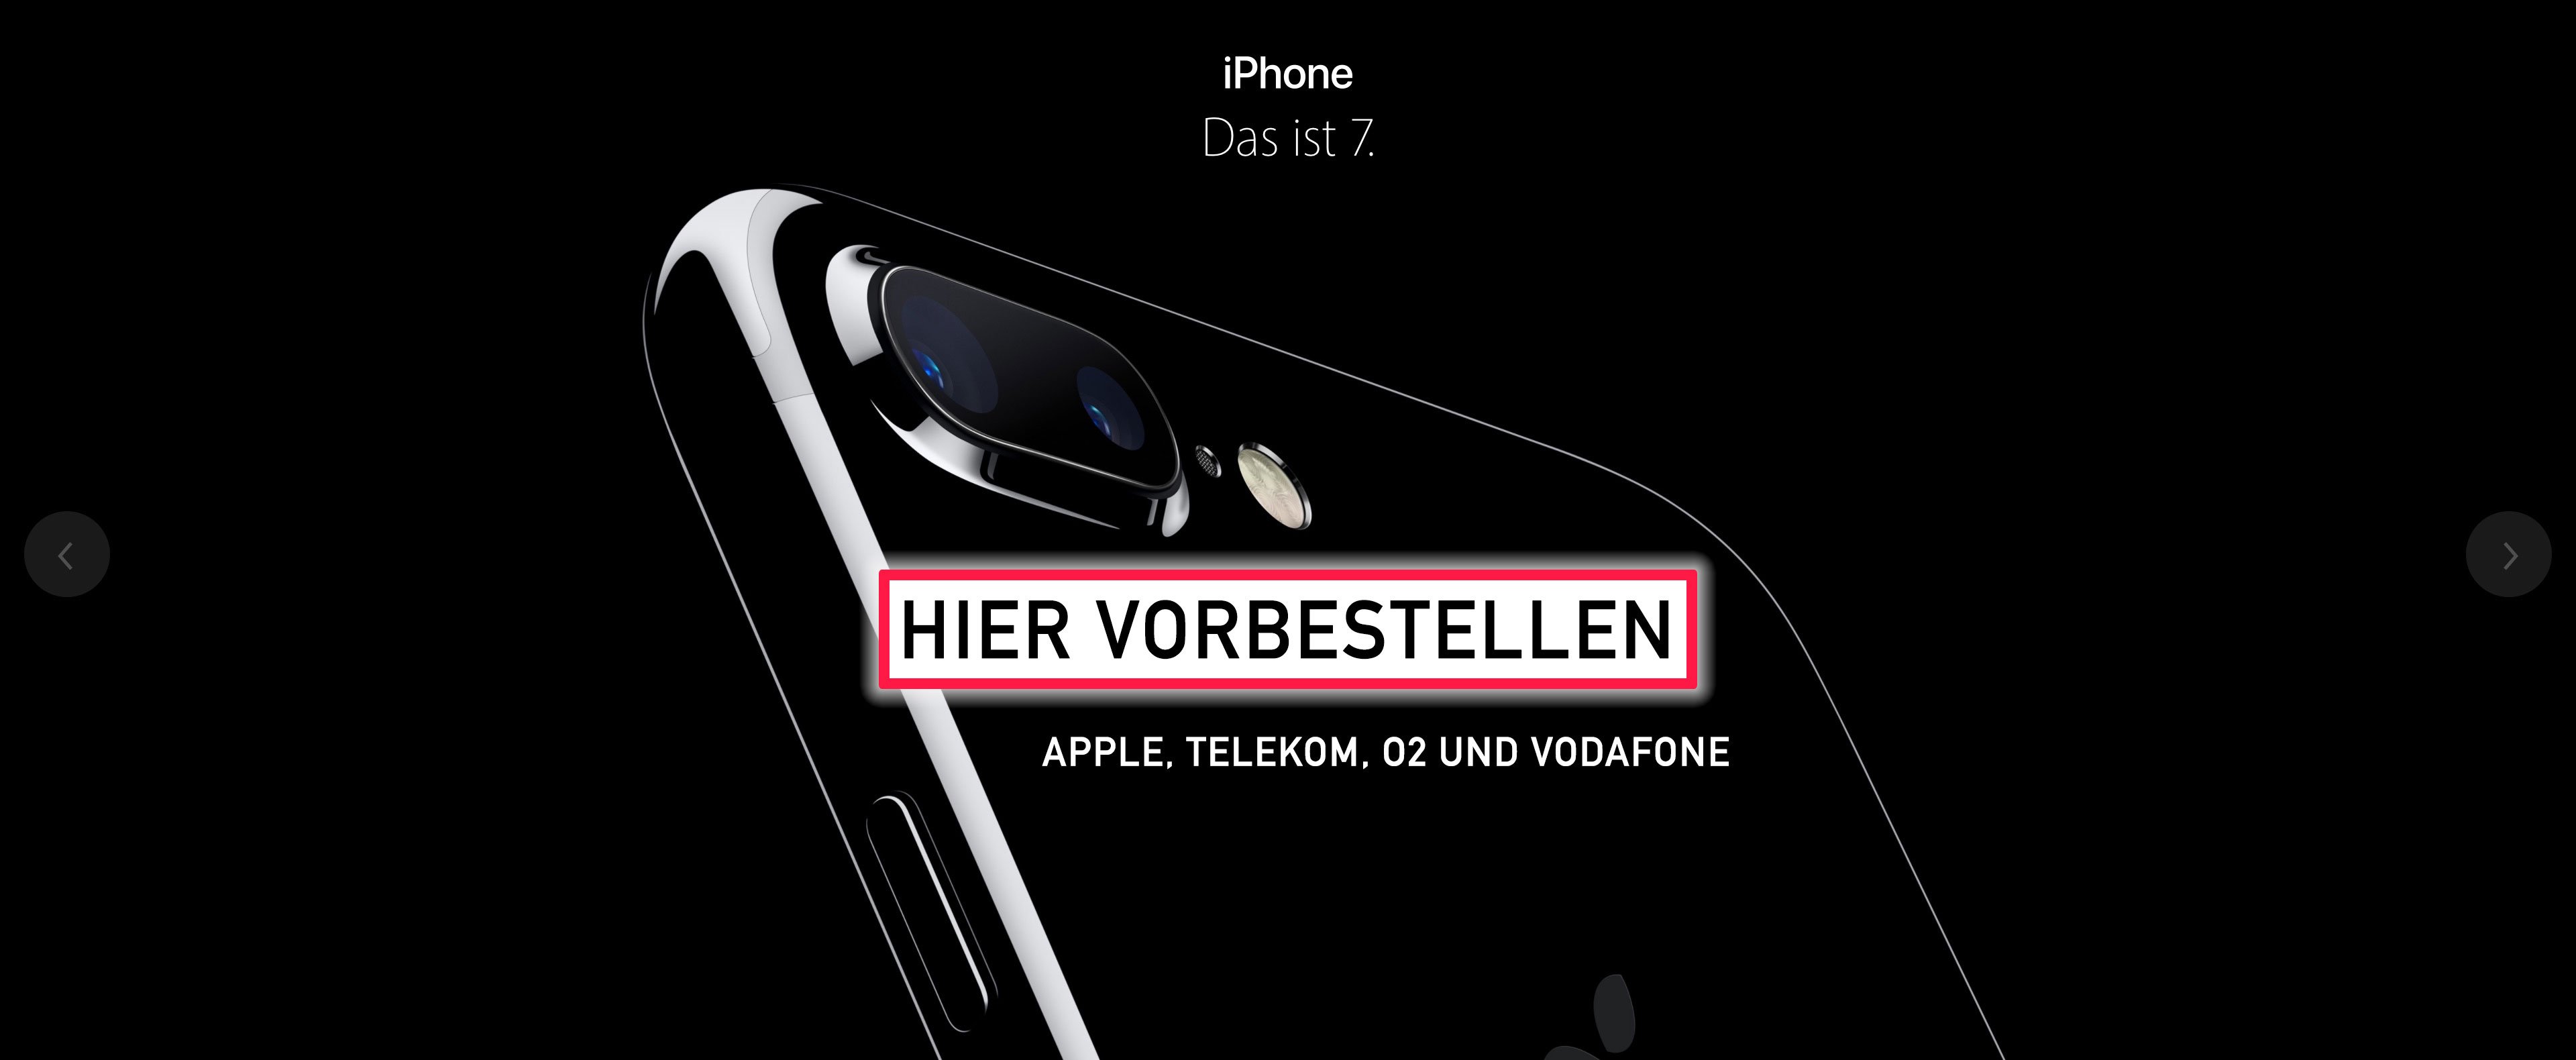 iPhone 7 vorbestellen: iPhone 7 bei O2, Telekom und Vodafone jetzt online erhältlich! 3